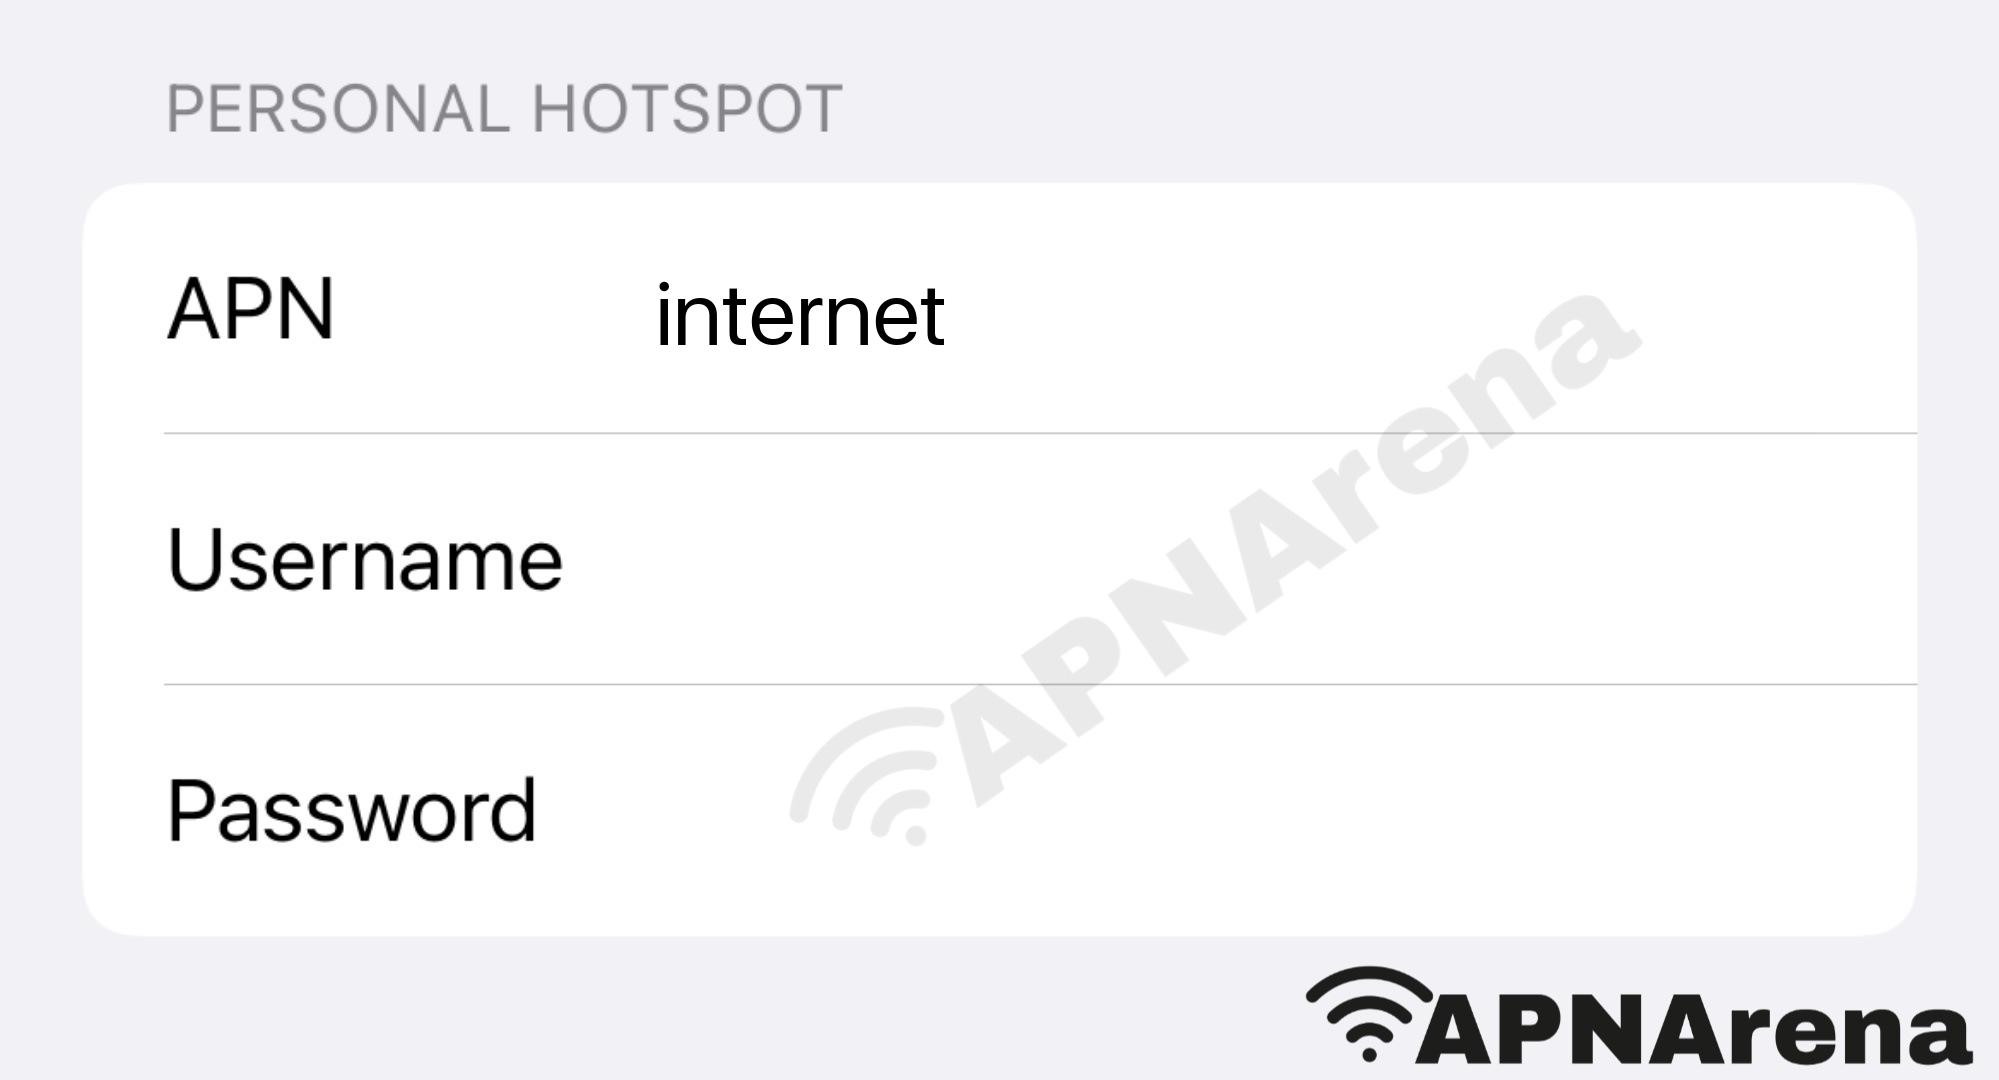 Crnogorski Telekom Personal Hotspot Settings for iPhone